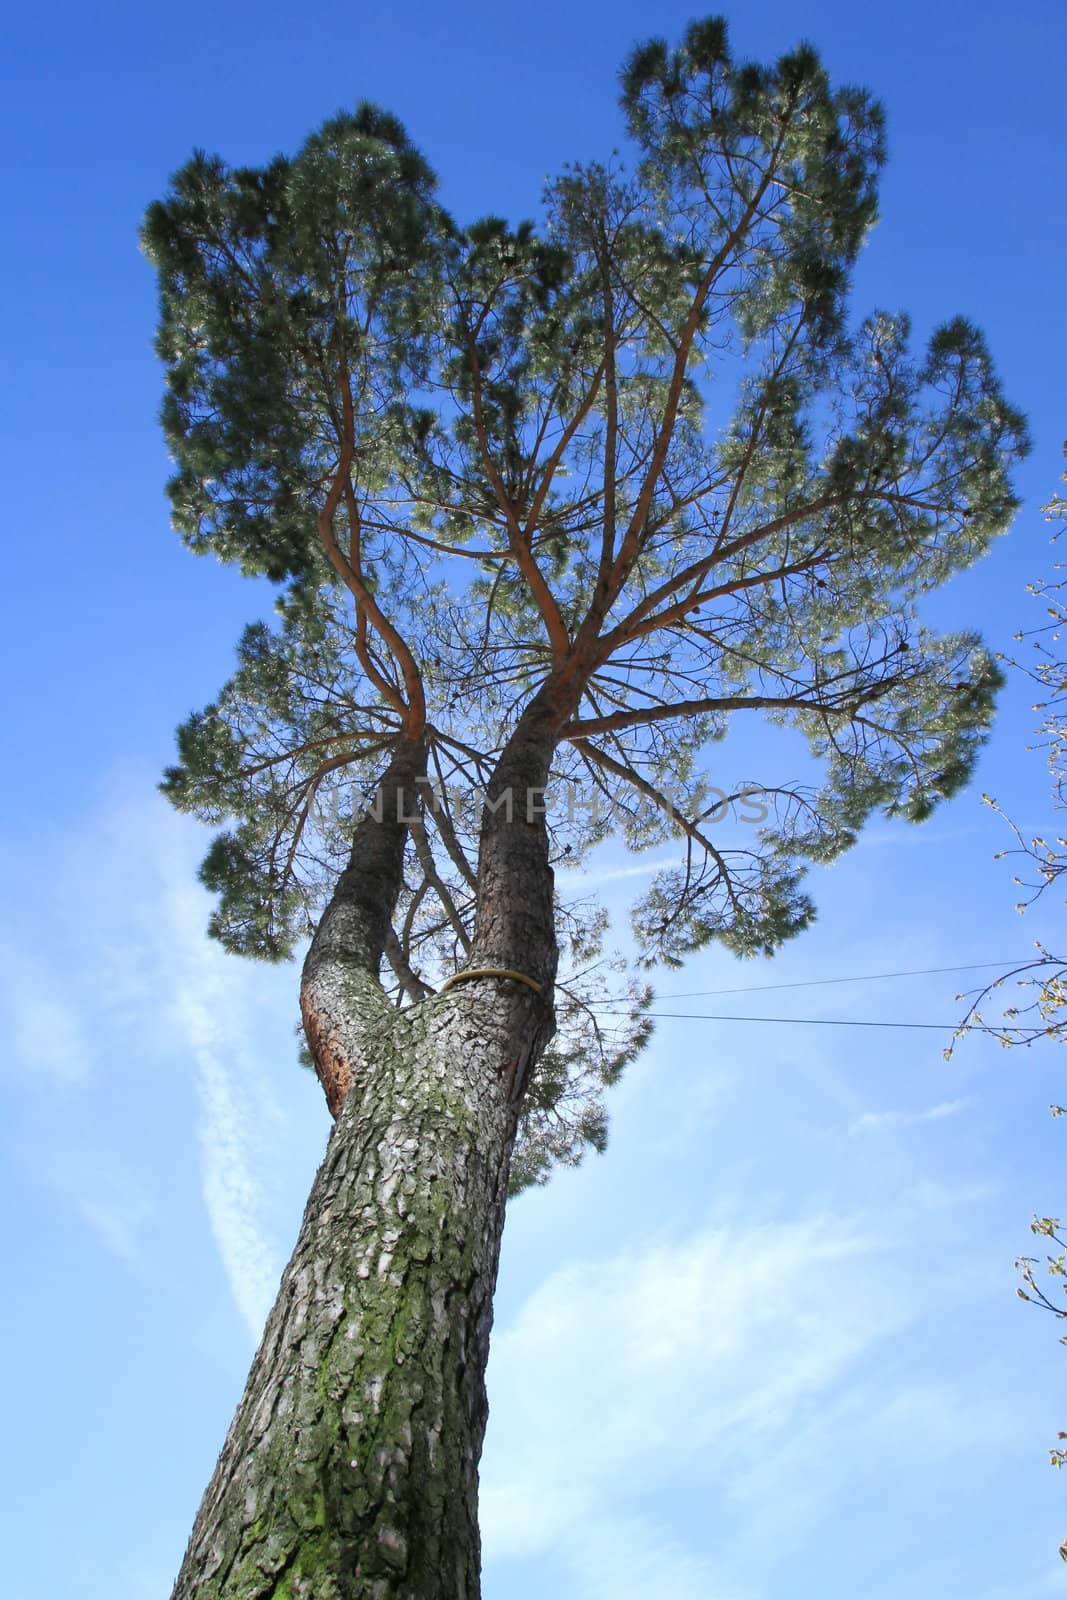 Umbrella pine, south Europe by Elenaphotos21